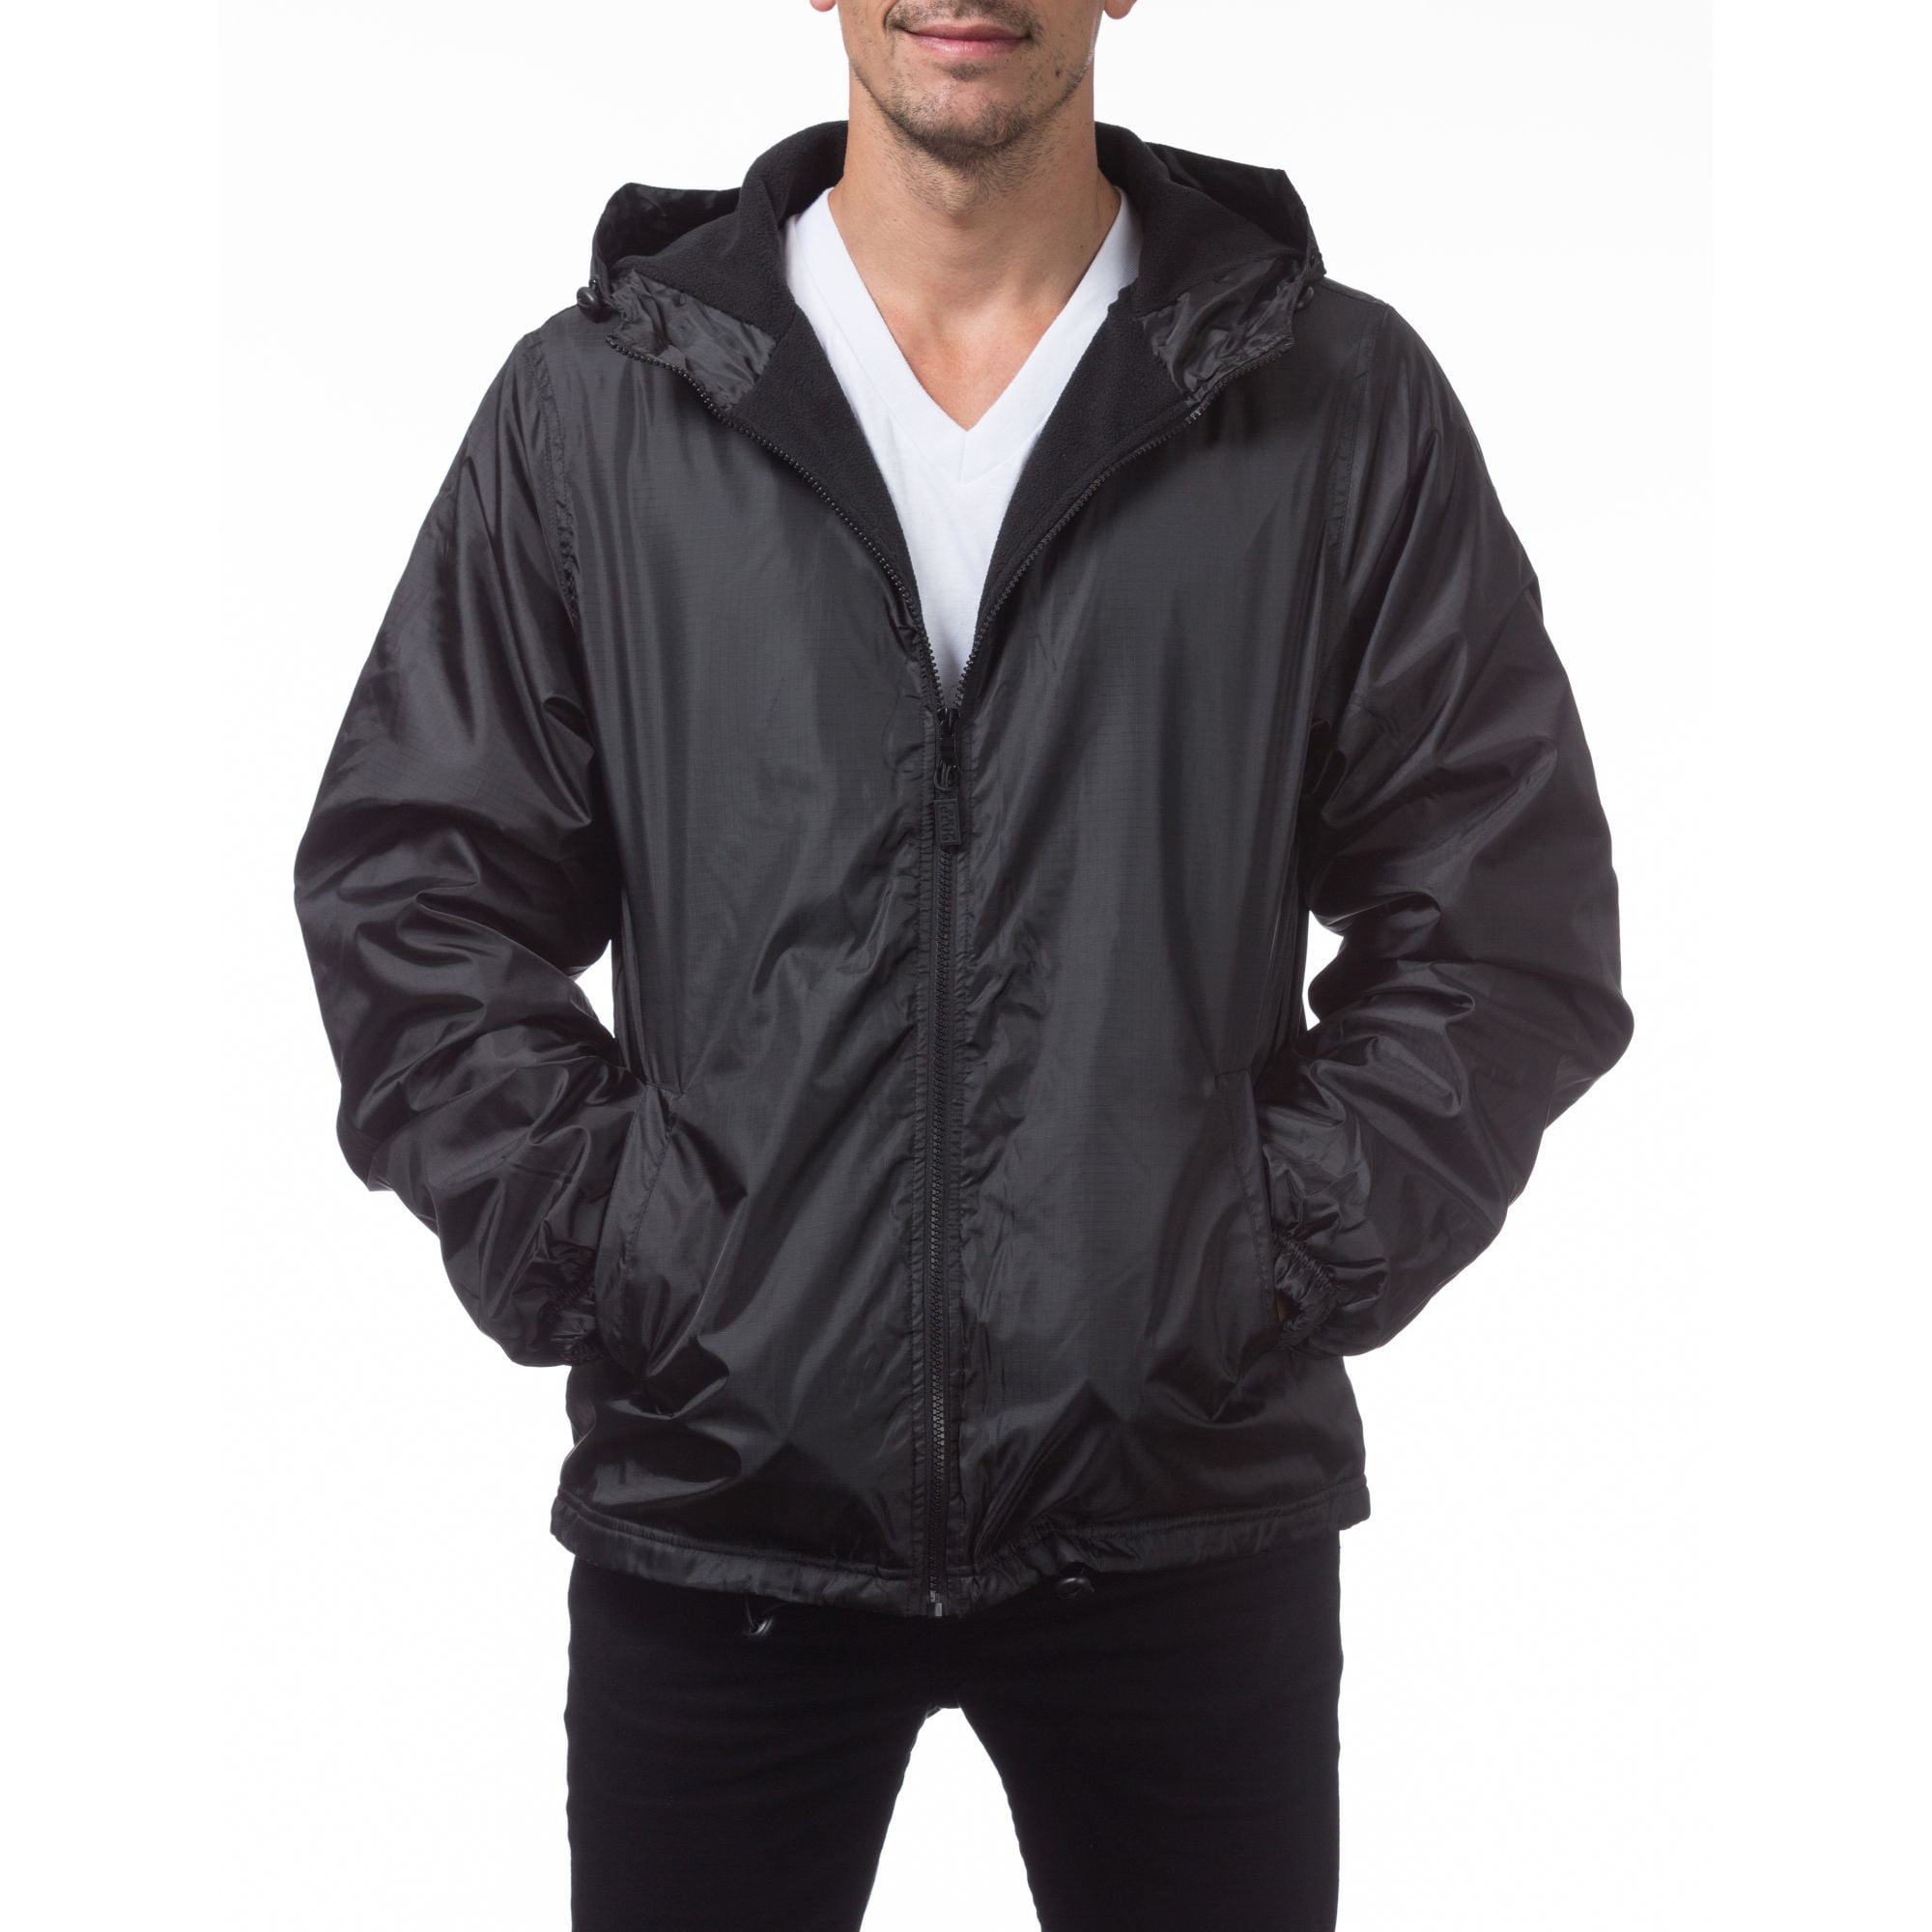 Bleecker and Mercer Lightweight Hooded Windbreaker Full-Zip Half-Zip Pullover Water Resistant Rain Jacket 